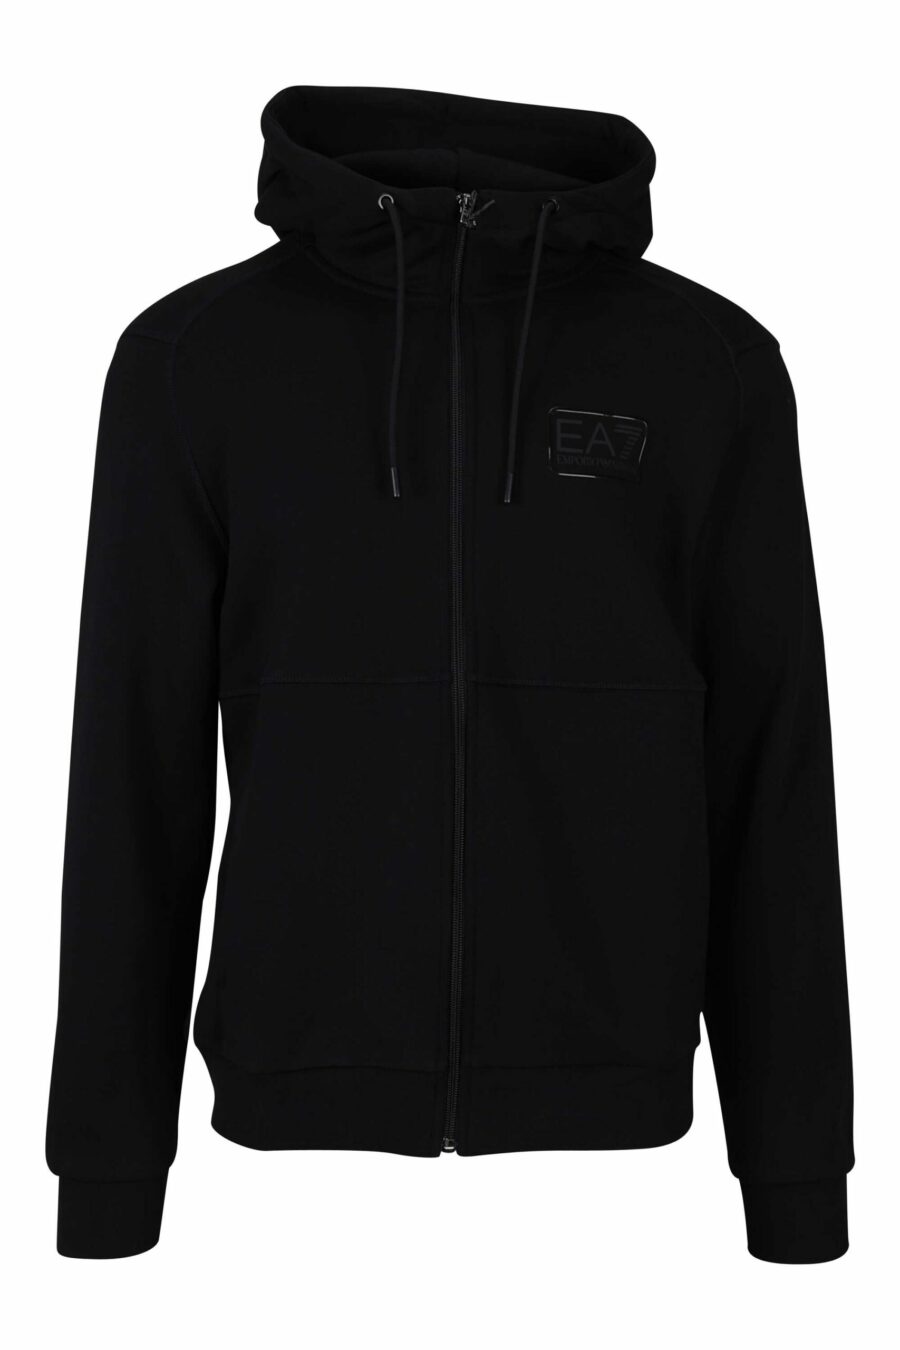 Schwarzes Kapuzensweatshirt mit Reißverschluss und Minilogue-Label "lux identity" - 8056787945869 1 skaliert